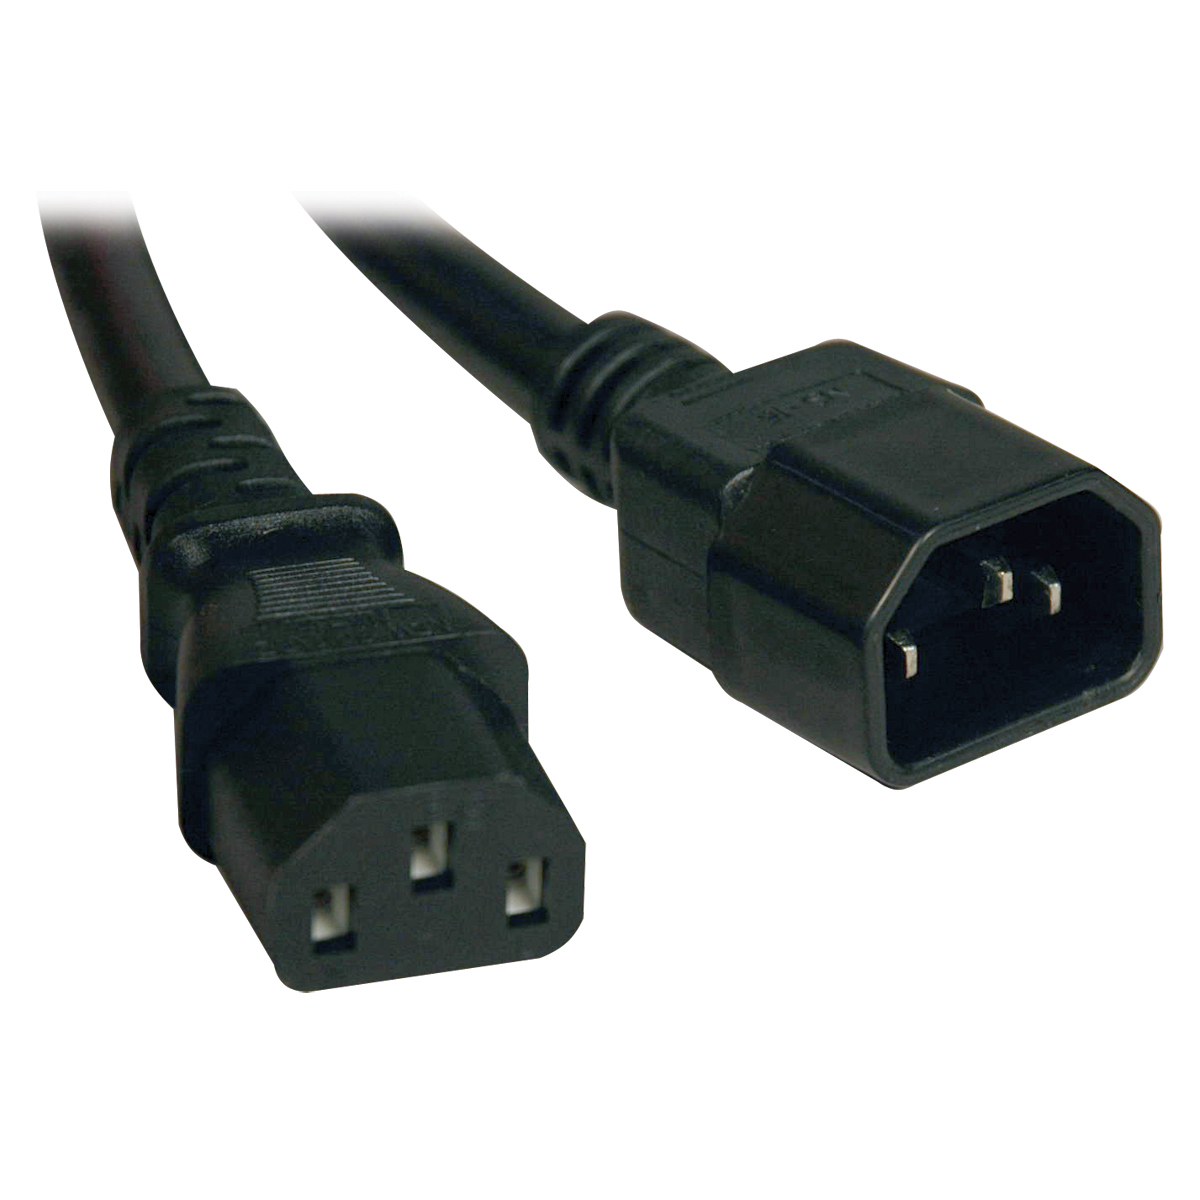 Cable De Poder Tripp Lite C14 Coupler A C13 Coupler 2.44M P004-008